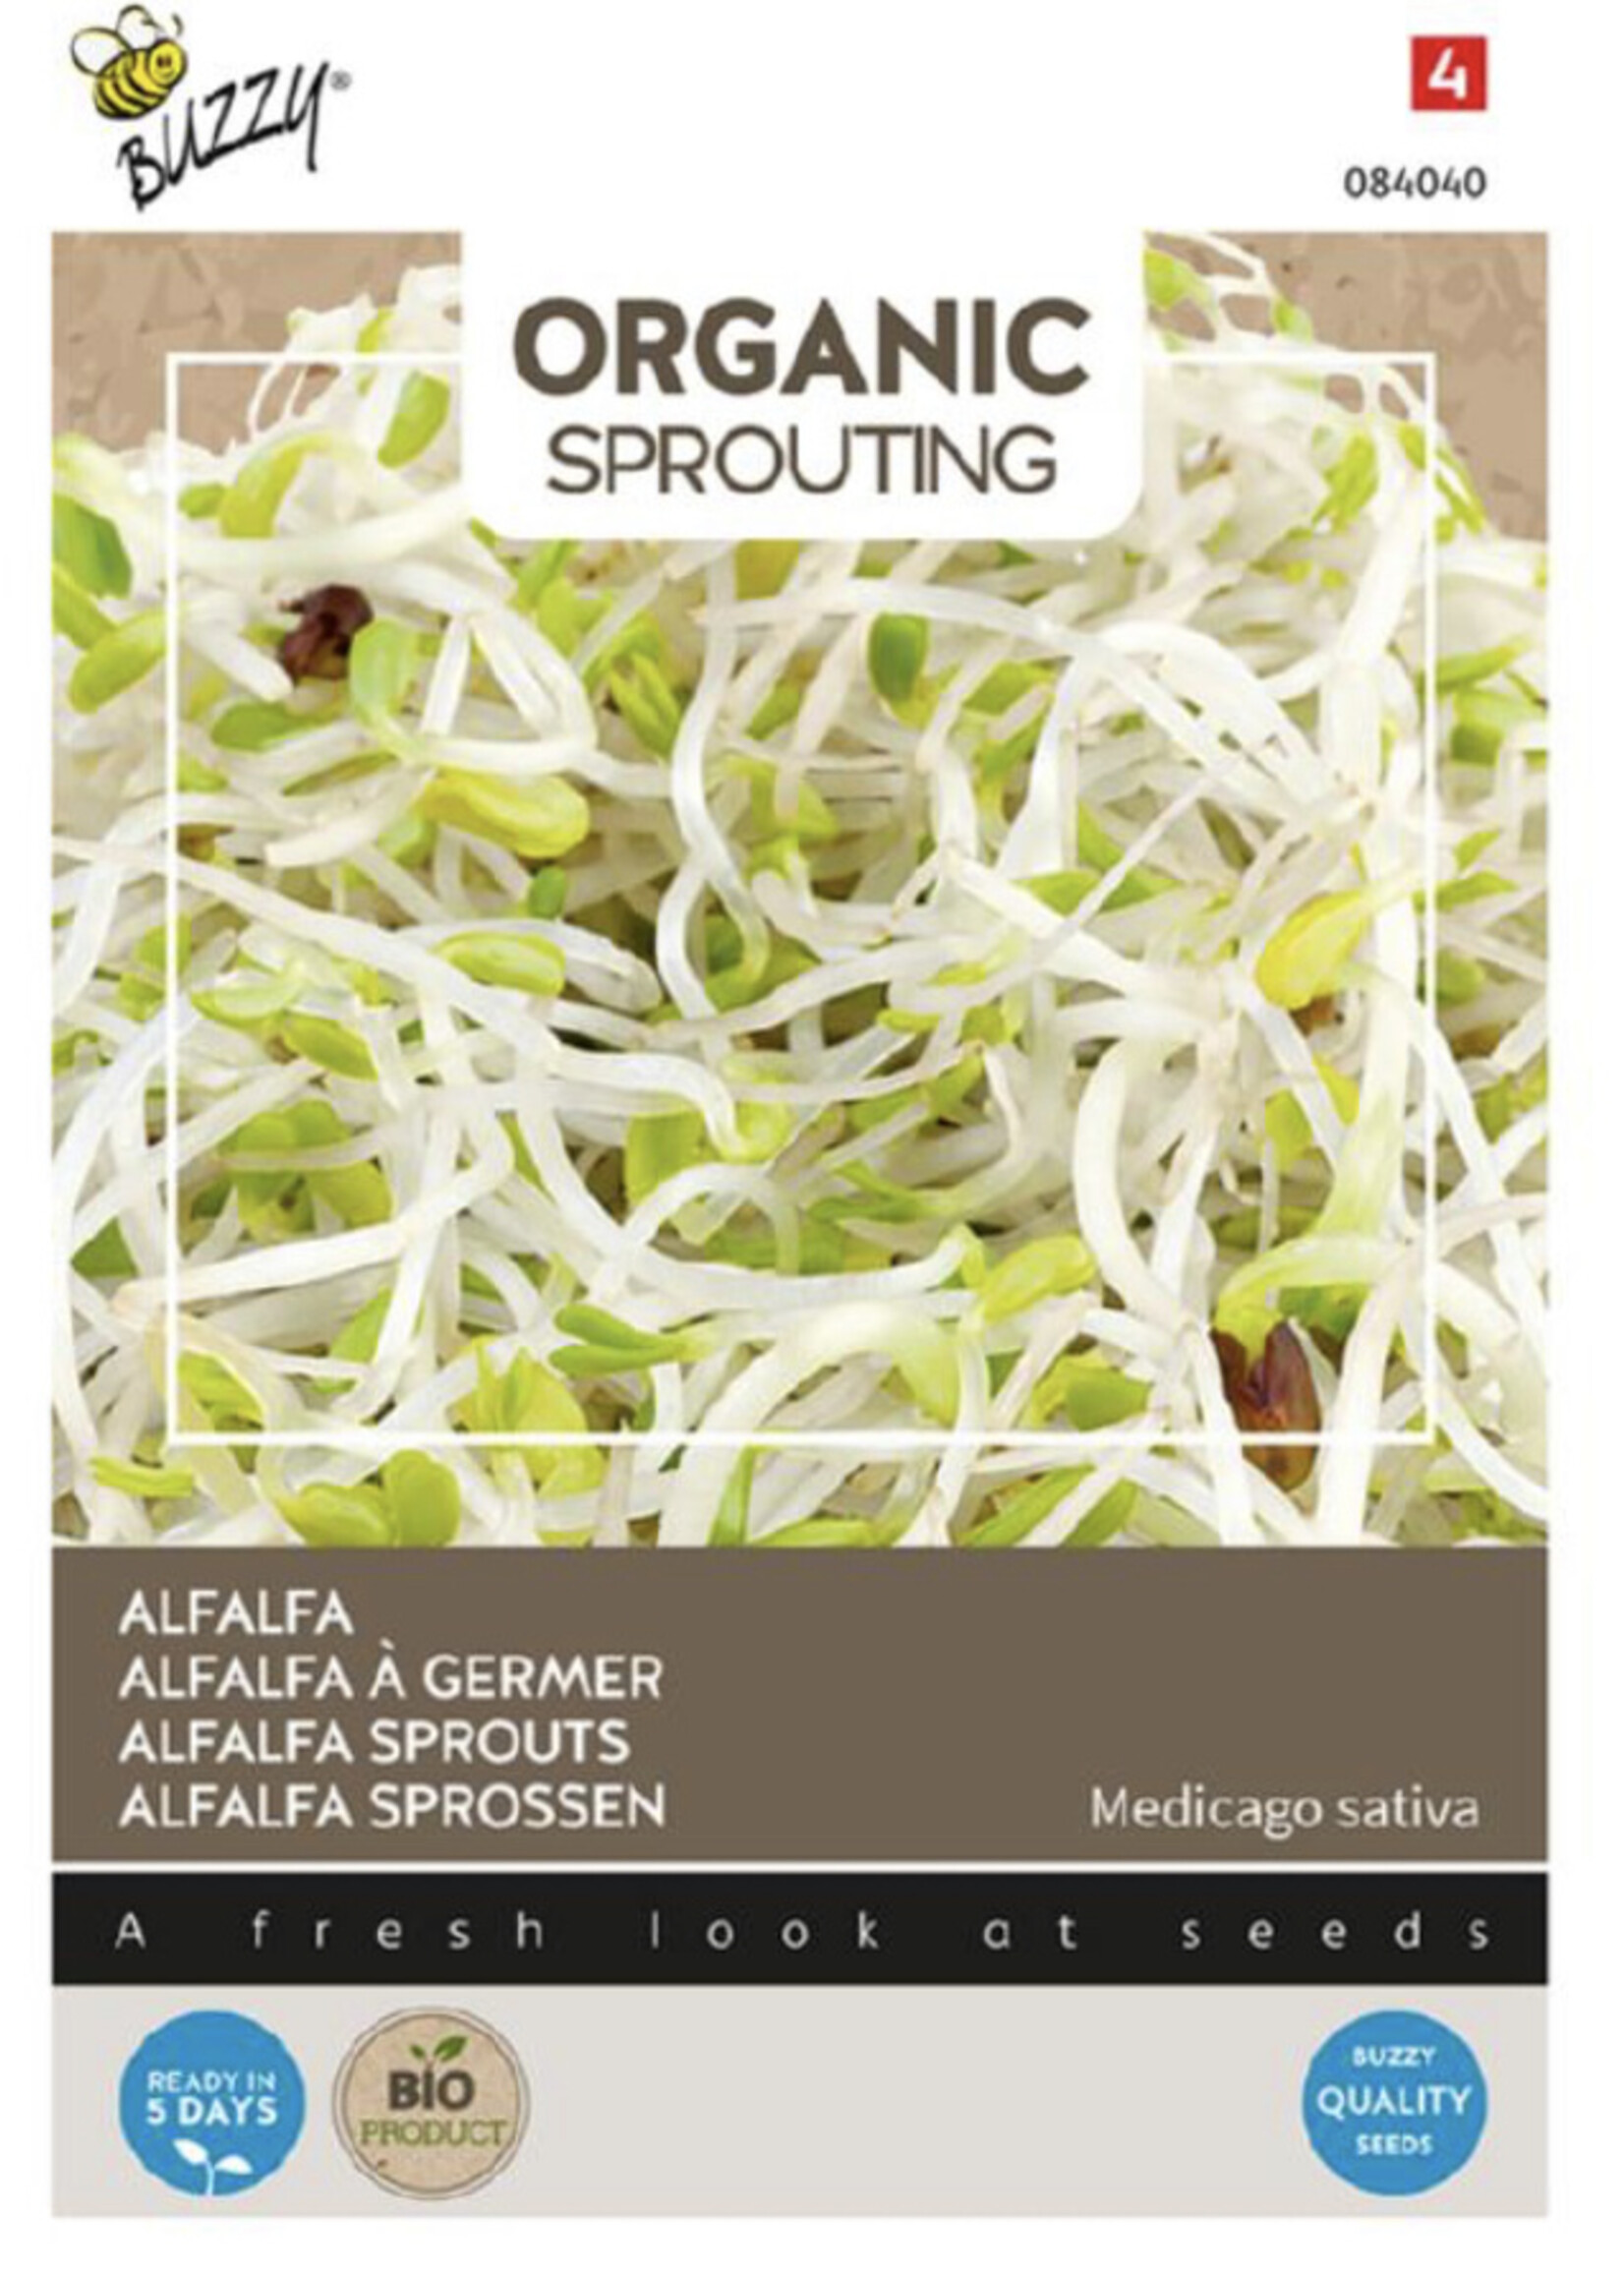 Buzzy Organic Sprouting Alfalfa